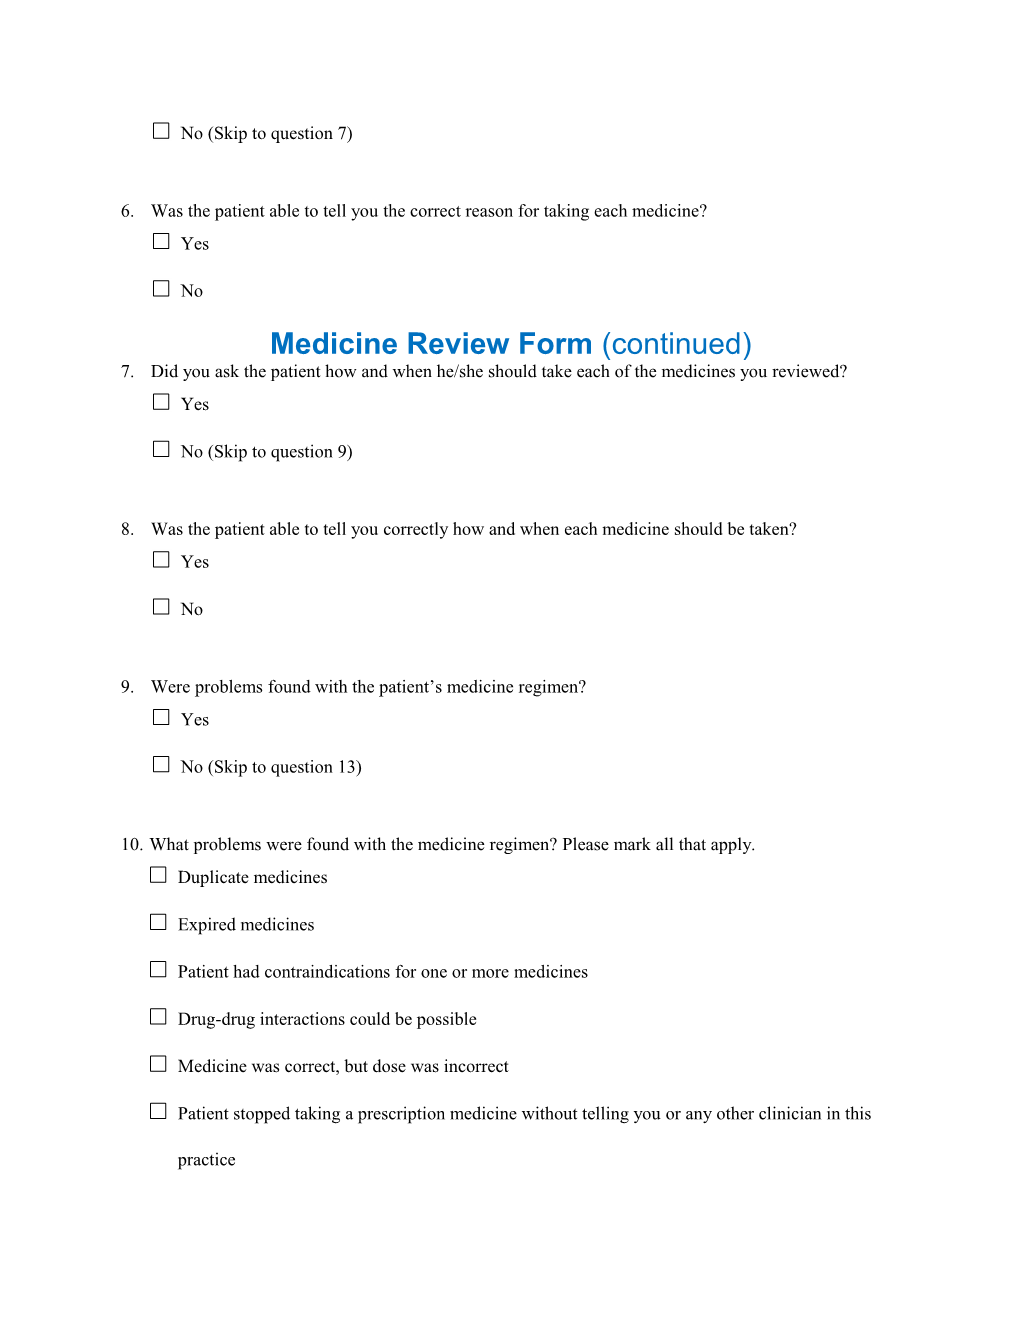 Medicine Review Form